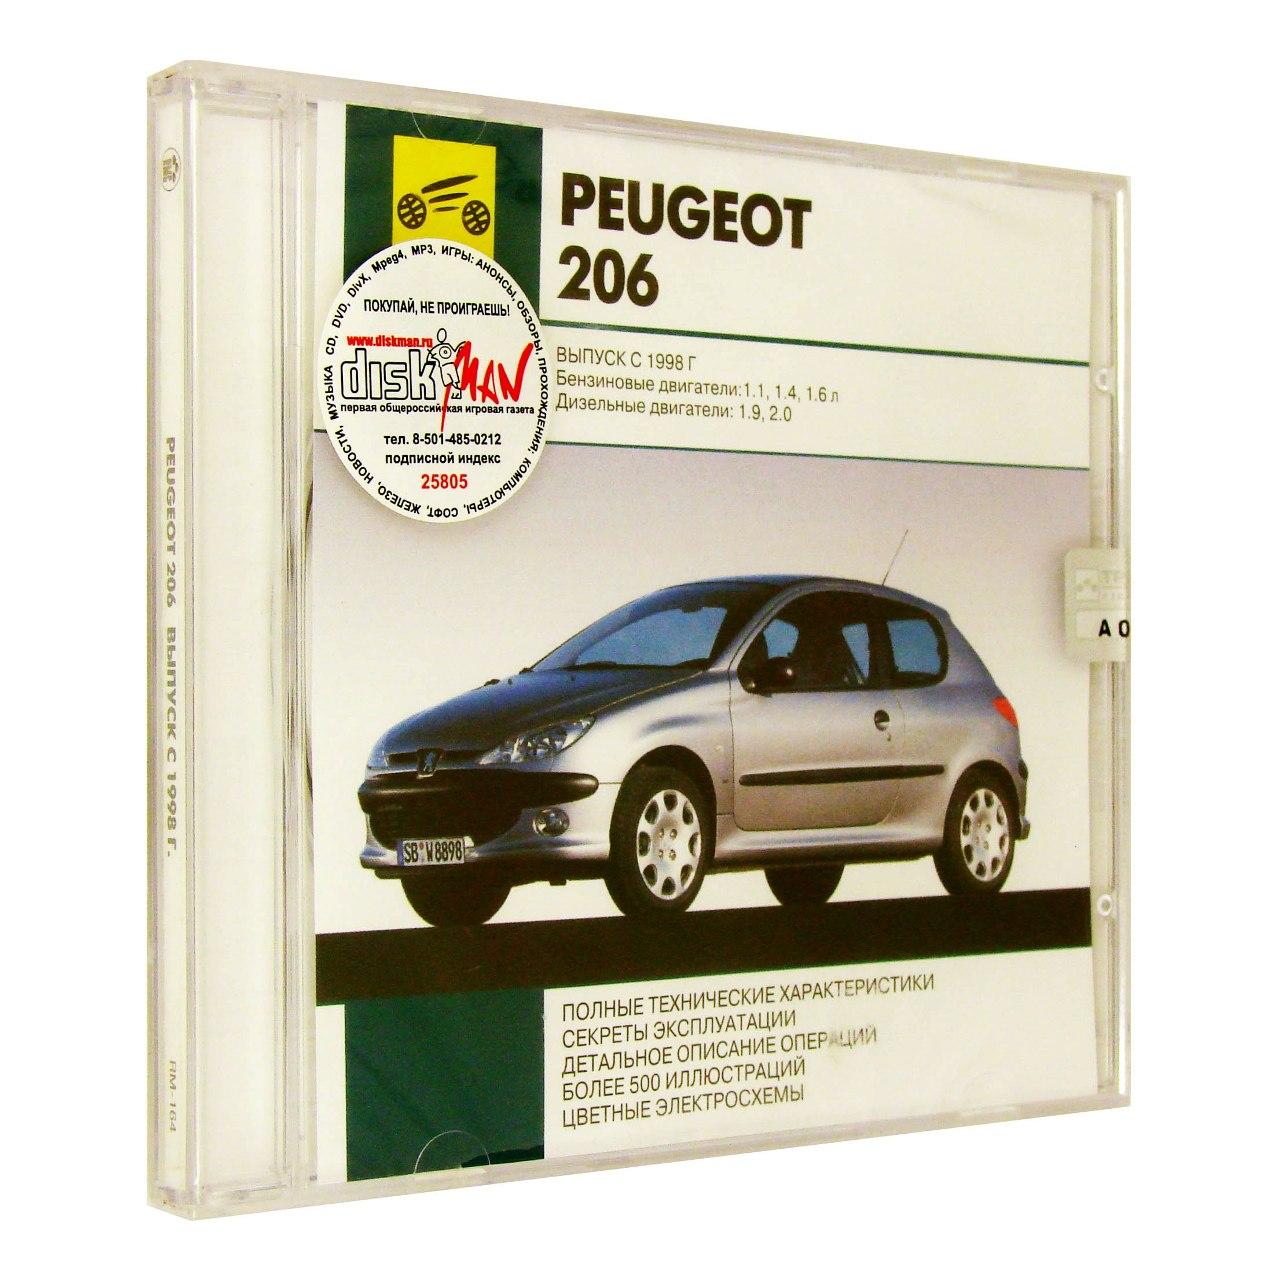 Компьютерный компакт-диск Peugeot 206 Выпуск с 1998 Автосервис на дому. (ПК), фирма "RMG Multimedia", 1CD